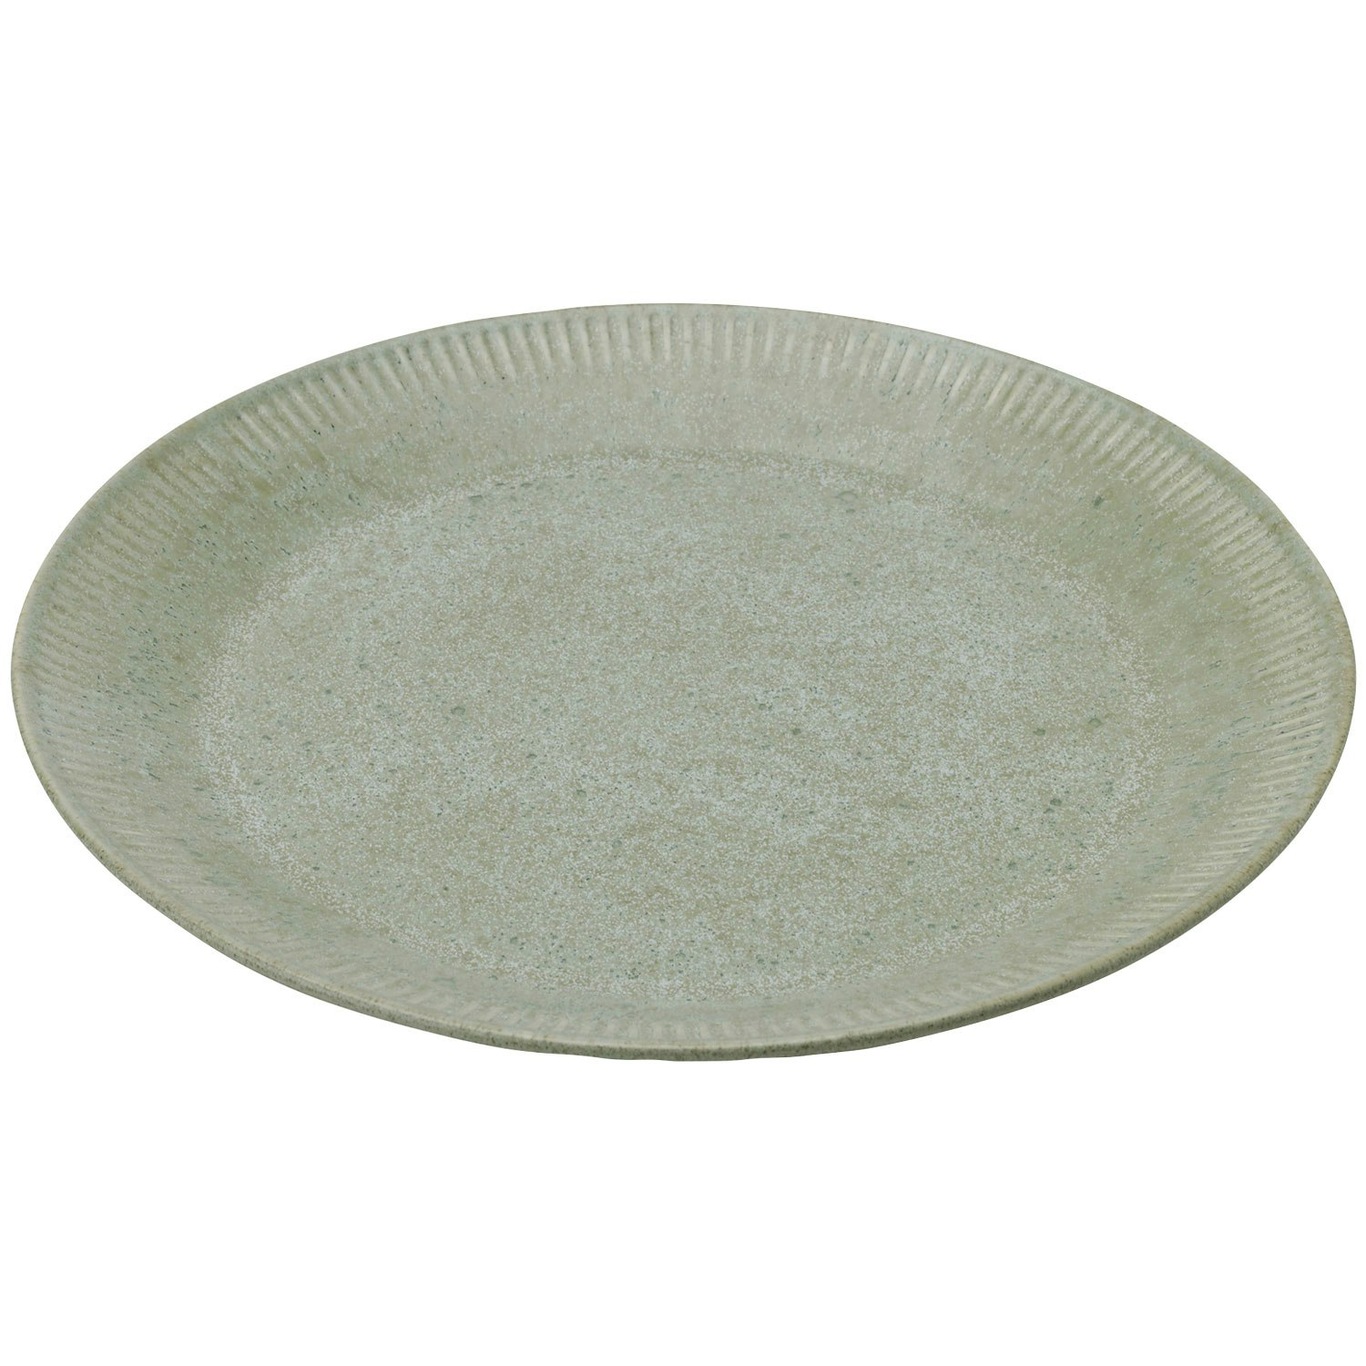 Knabstrup Plate 27 cm, Olive